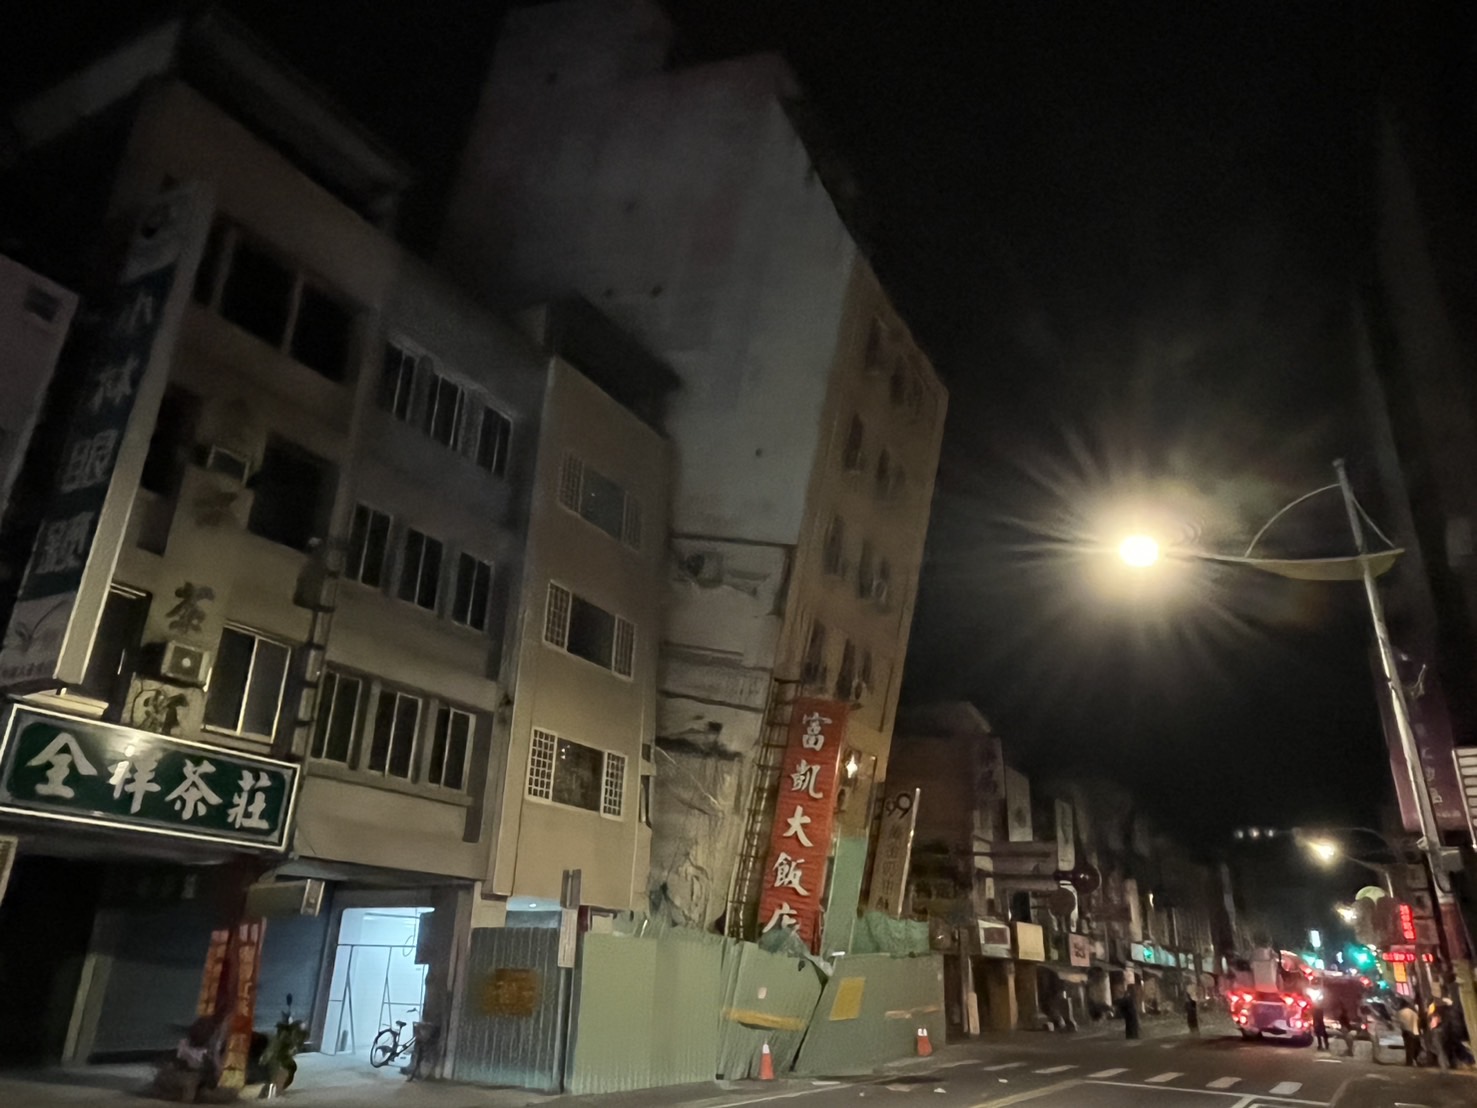 花莲富凯饭店倾斜倒塌。记者王燕华／摄影